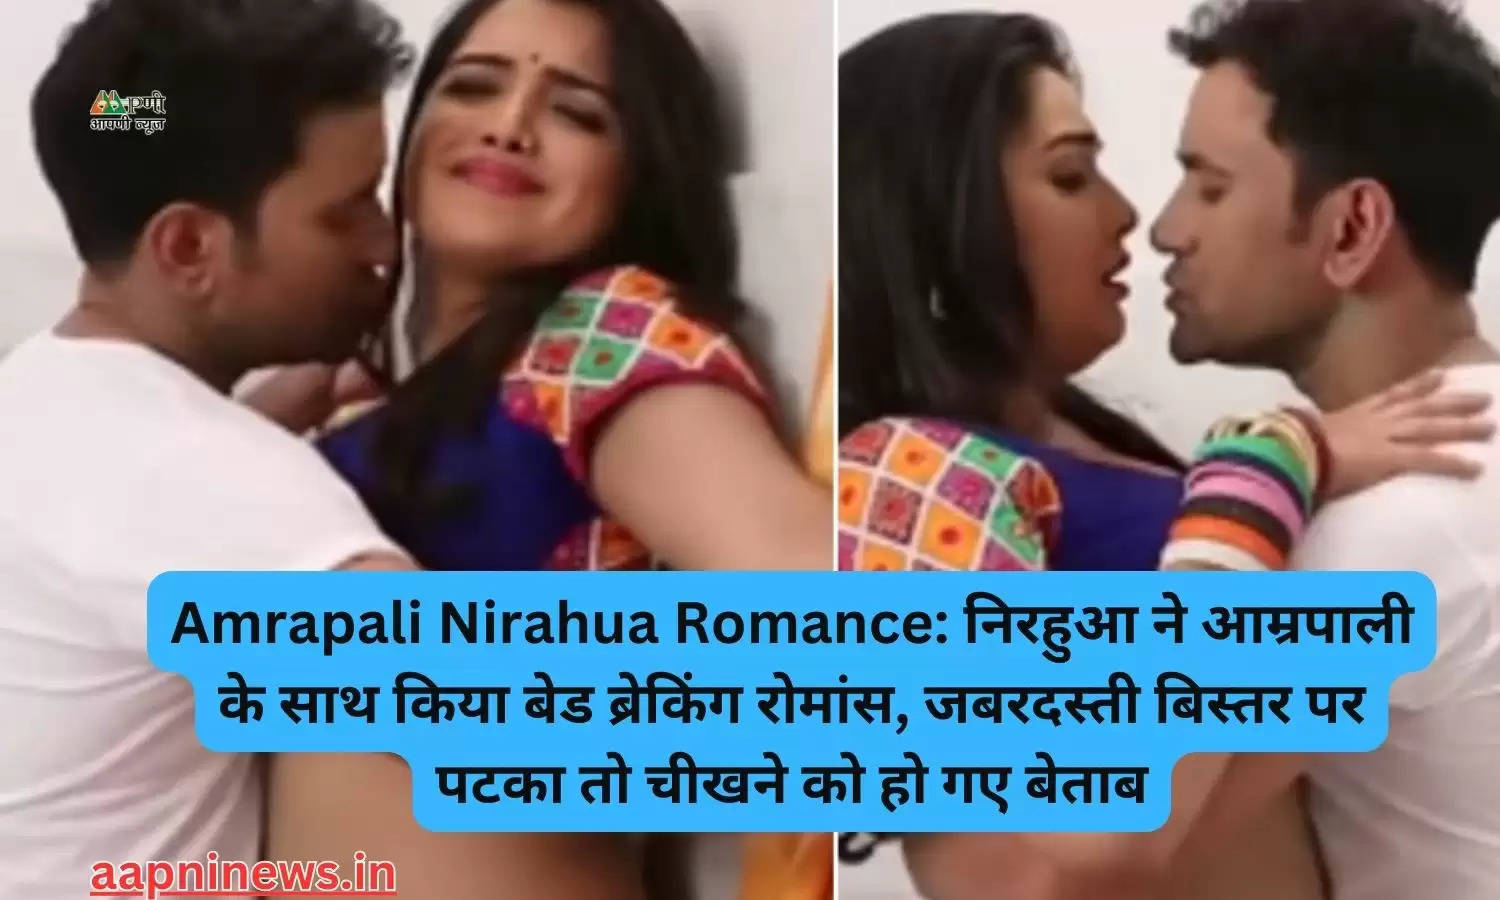 Amrapali Nirahua Romance: निरहुआ ने आम्रपाली के साथ किया बेड ब्रेकिंग रोमांस, जबरदस्ती बिस्तर पर पटका तो चीखने को हो गए बेताब